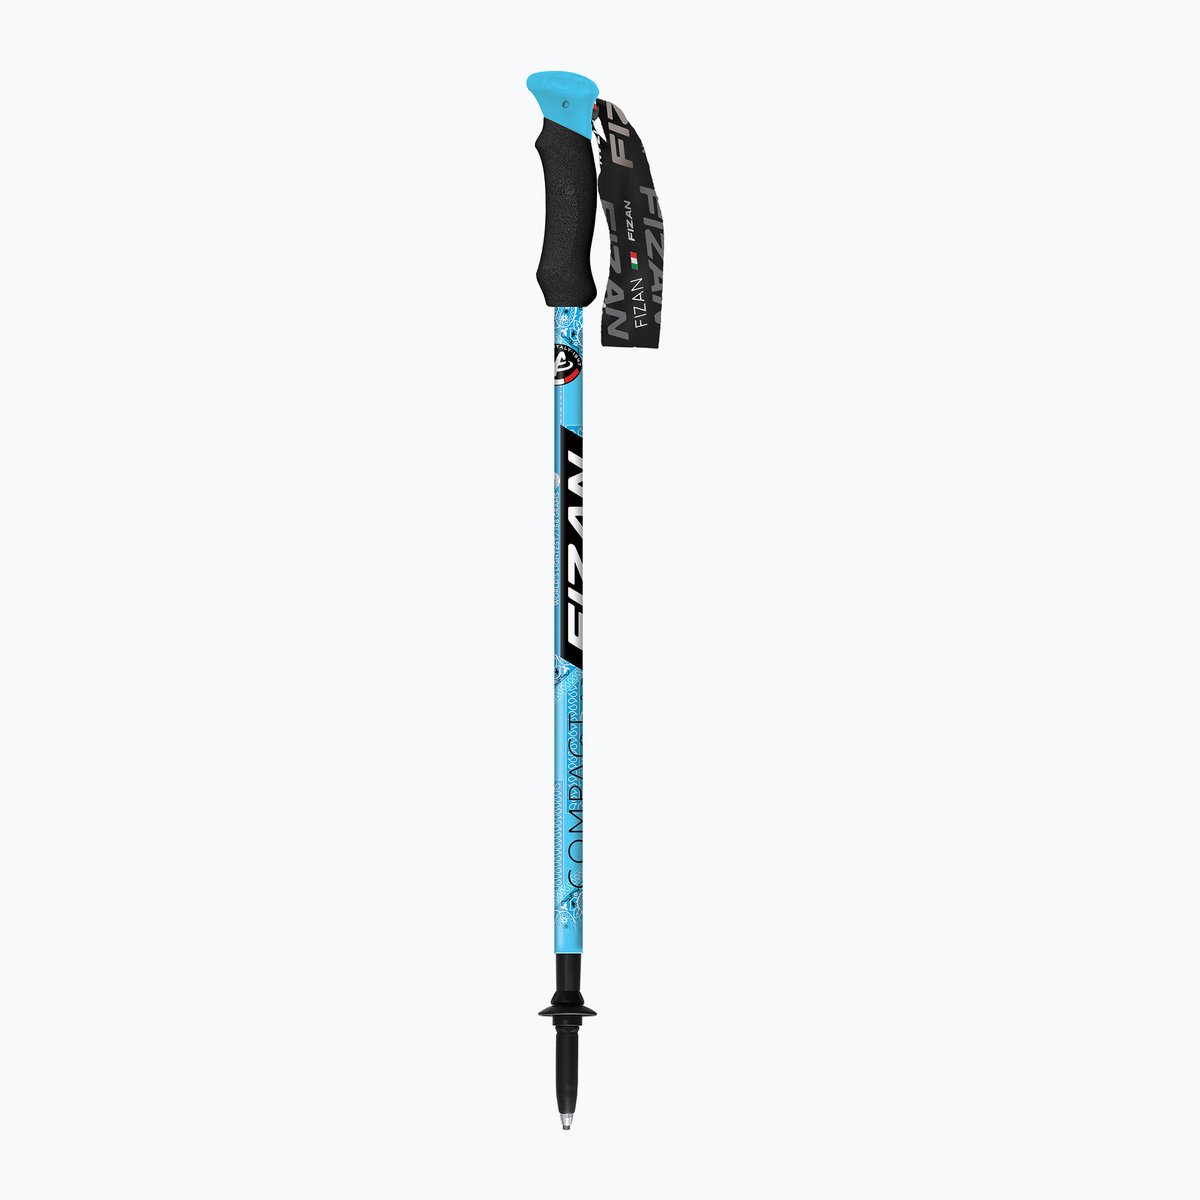 Kije trekkingowe Fizan Compact MS niebieskie S22 7103 59-132 cm